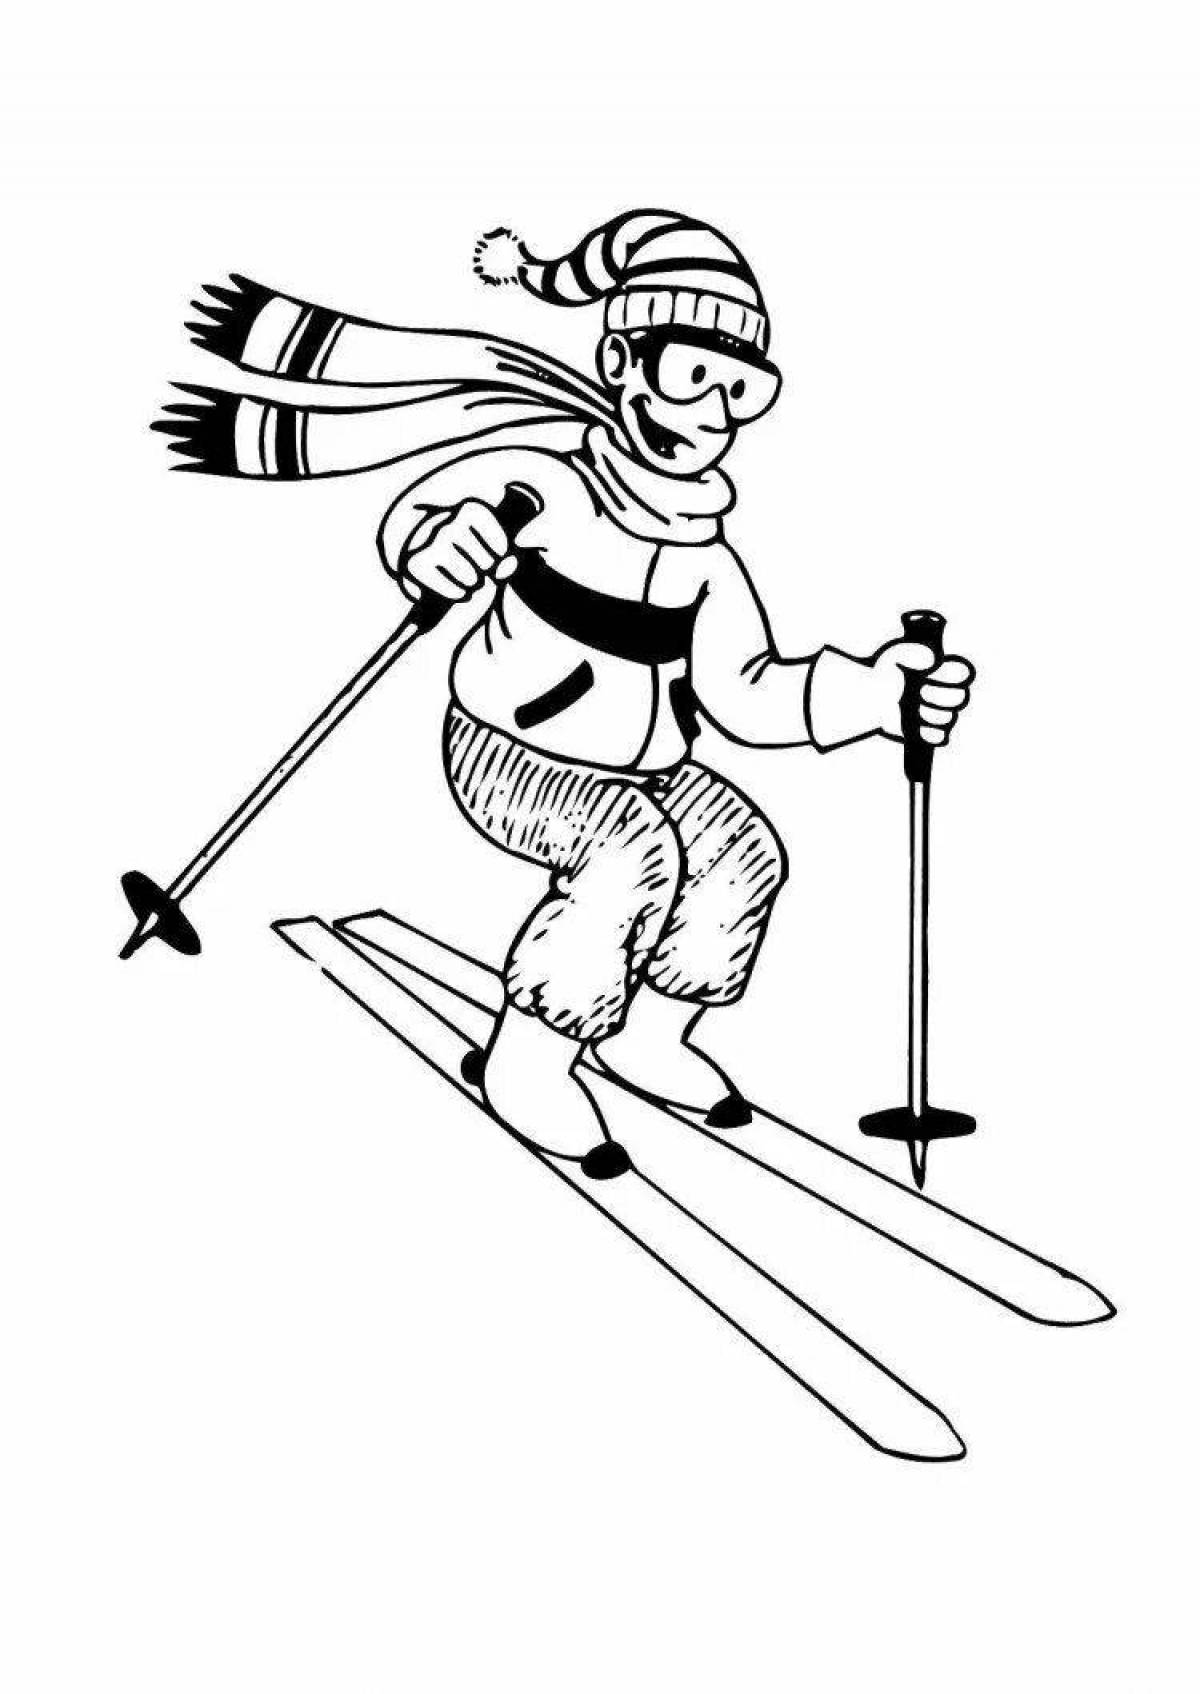 Уравновешенный лыжник в движении